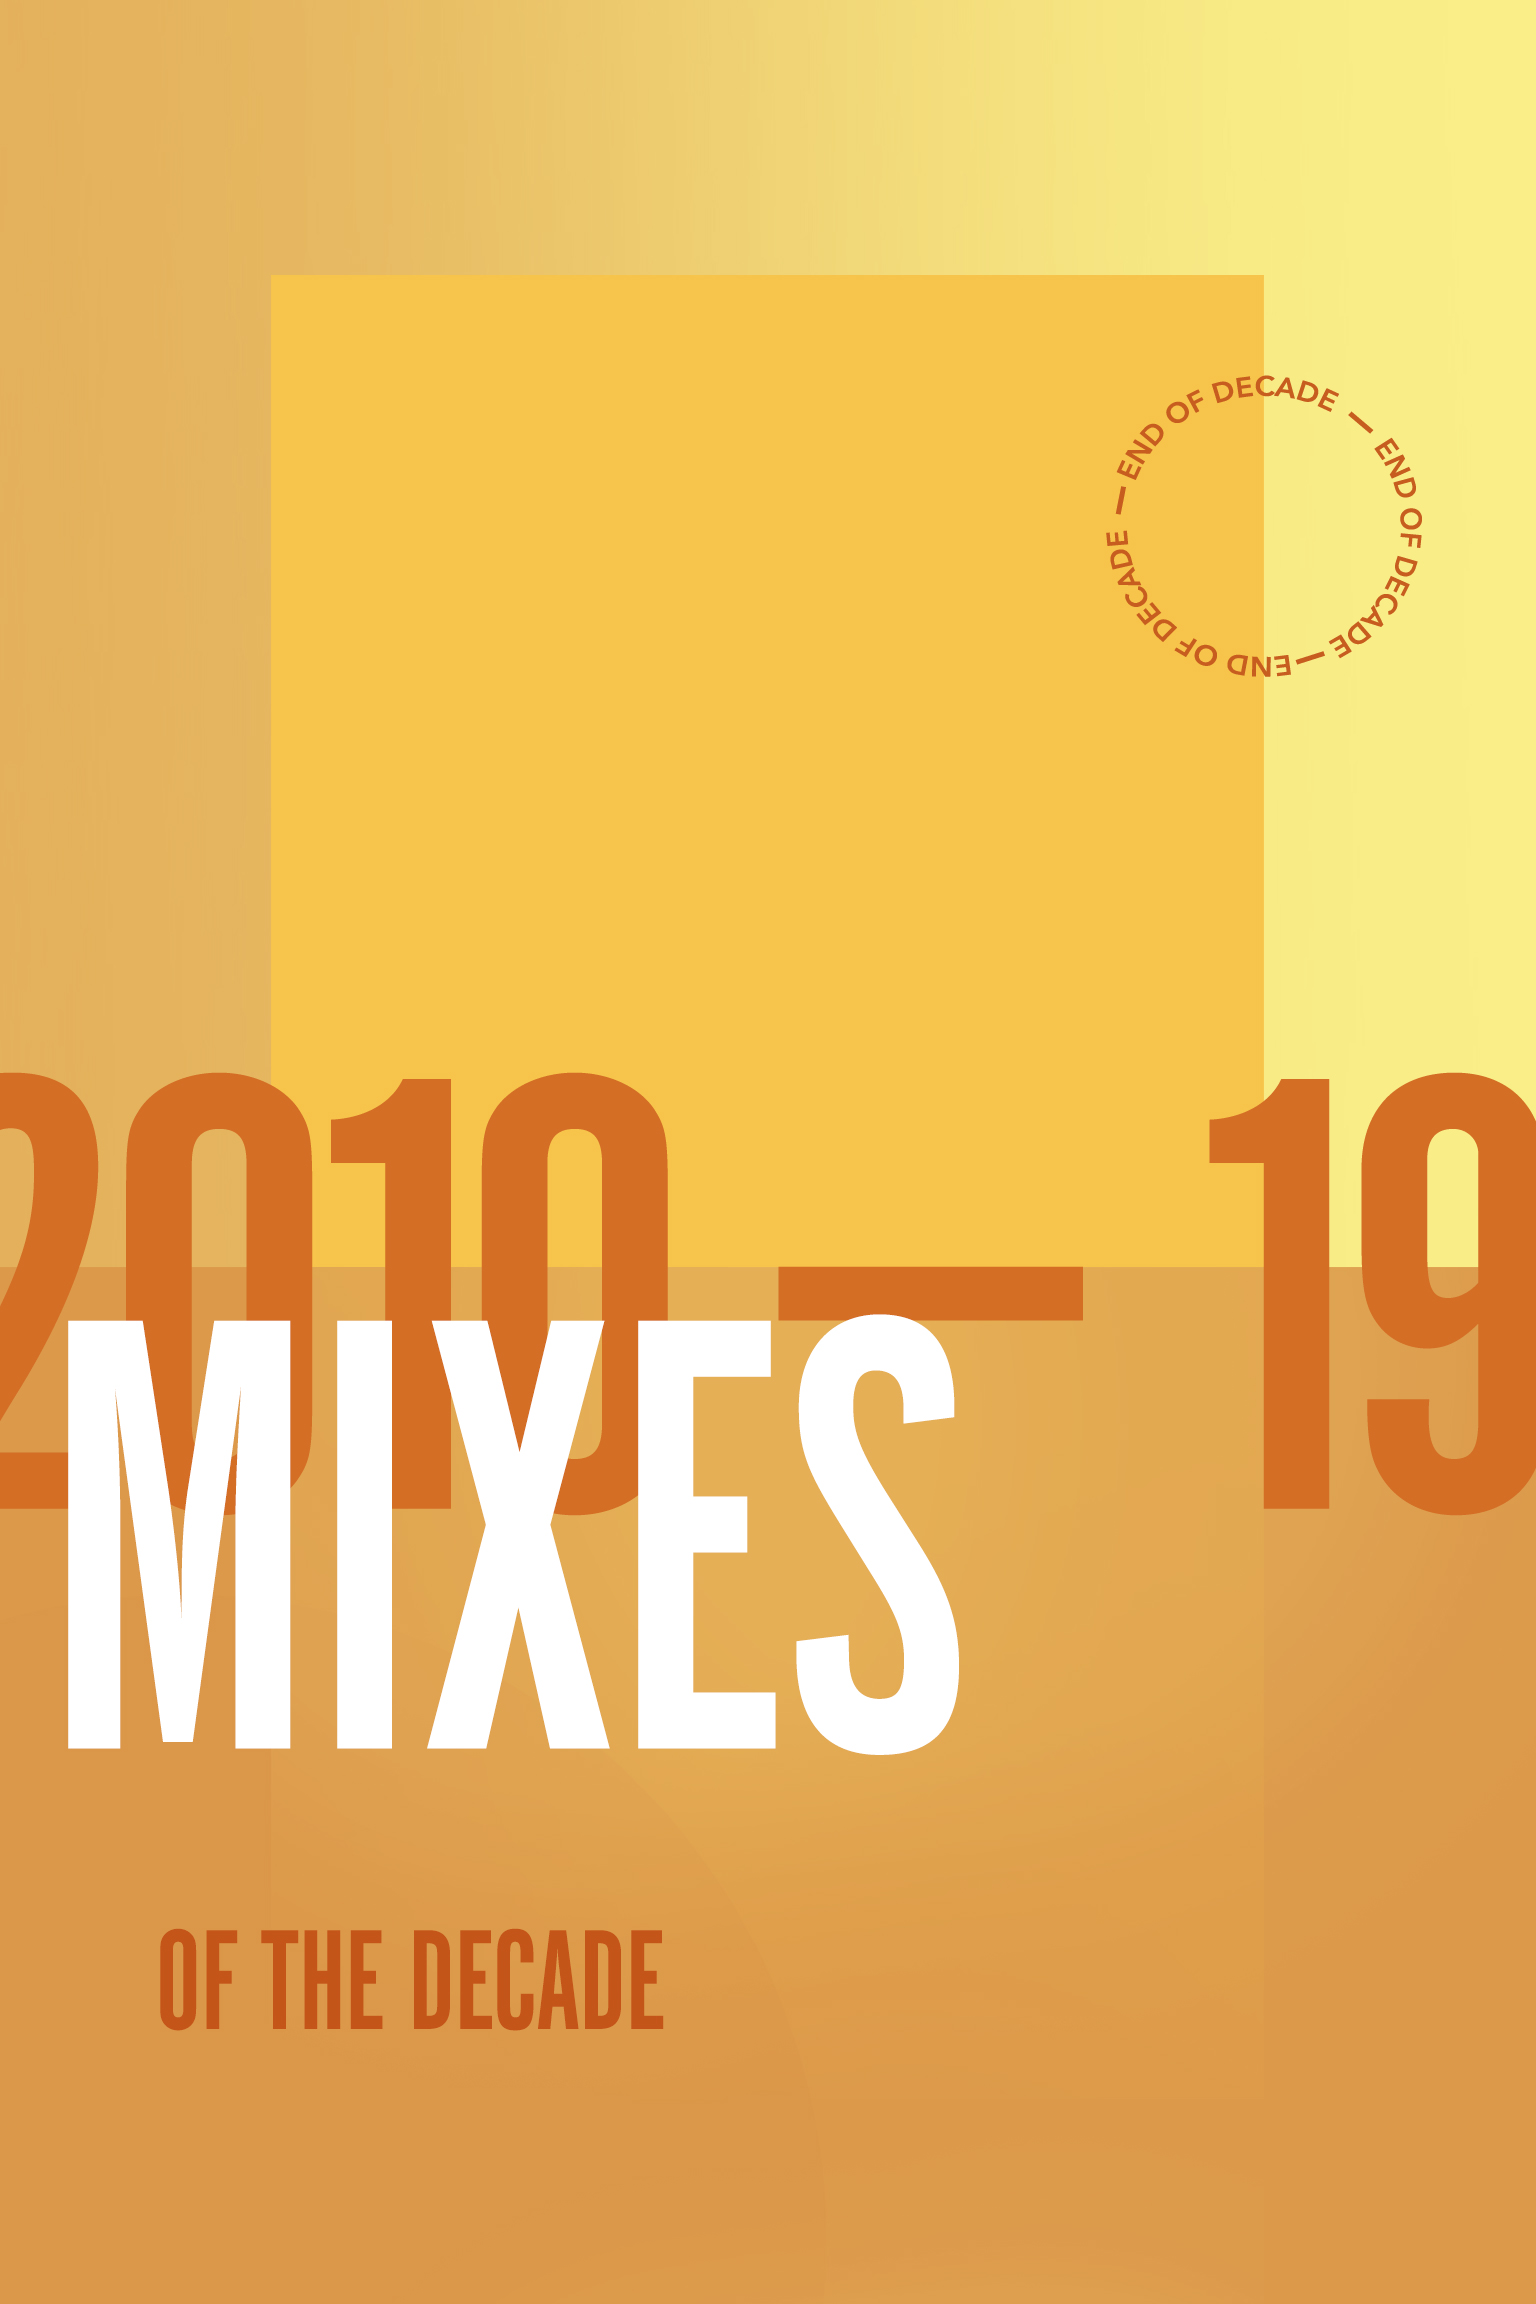 2010-19: Mixes Of The Decade